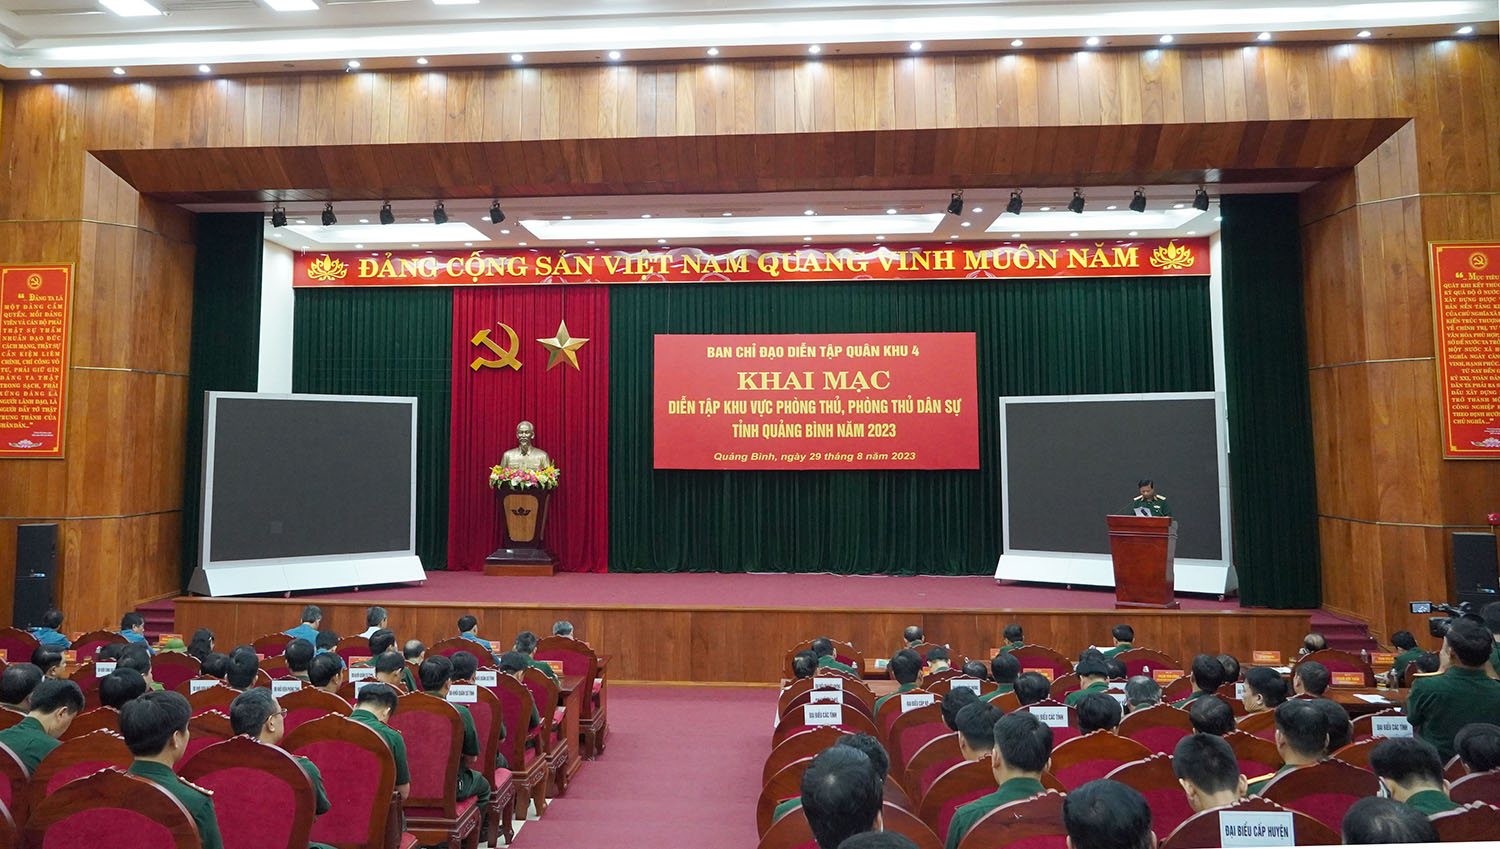 Quang cảnh khai mạc diễn tập KVPT và PTDS tỉnh Quảng Bình năm 2023.